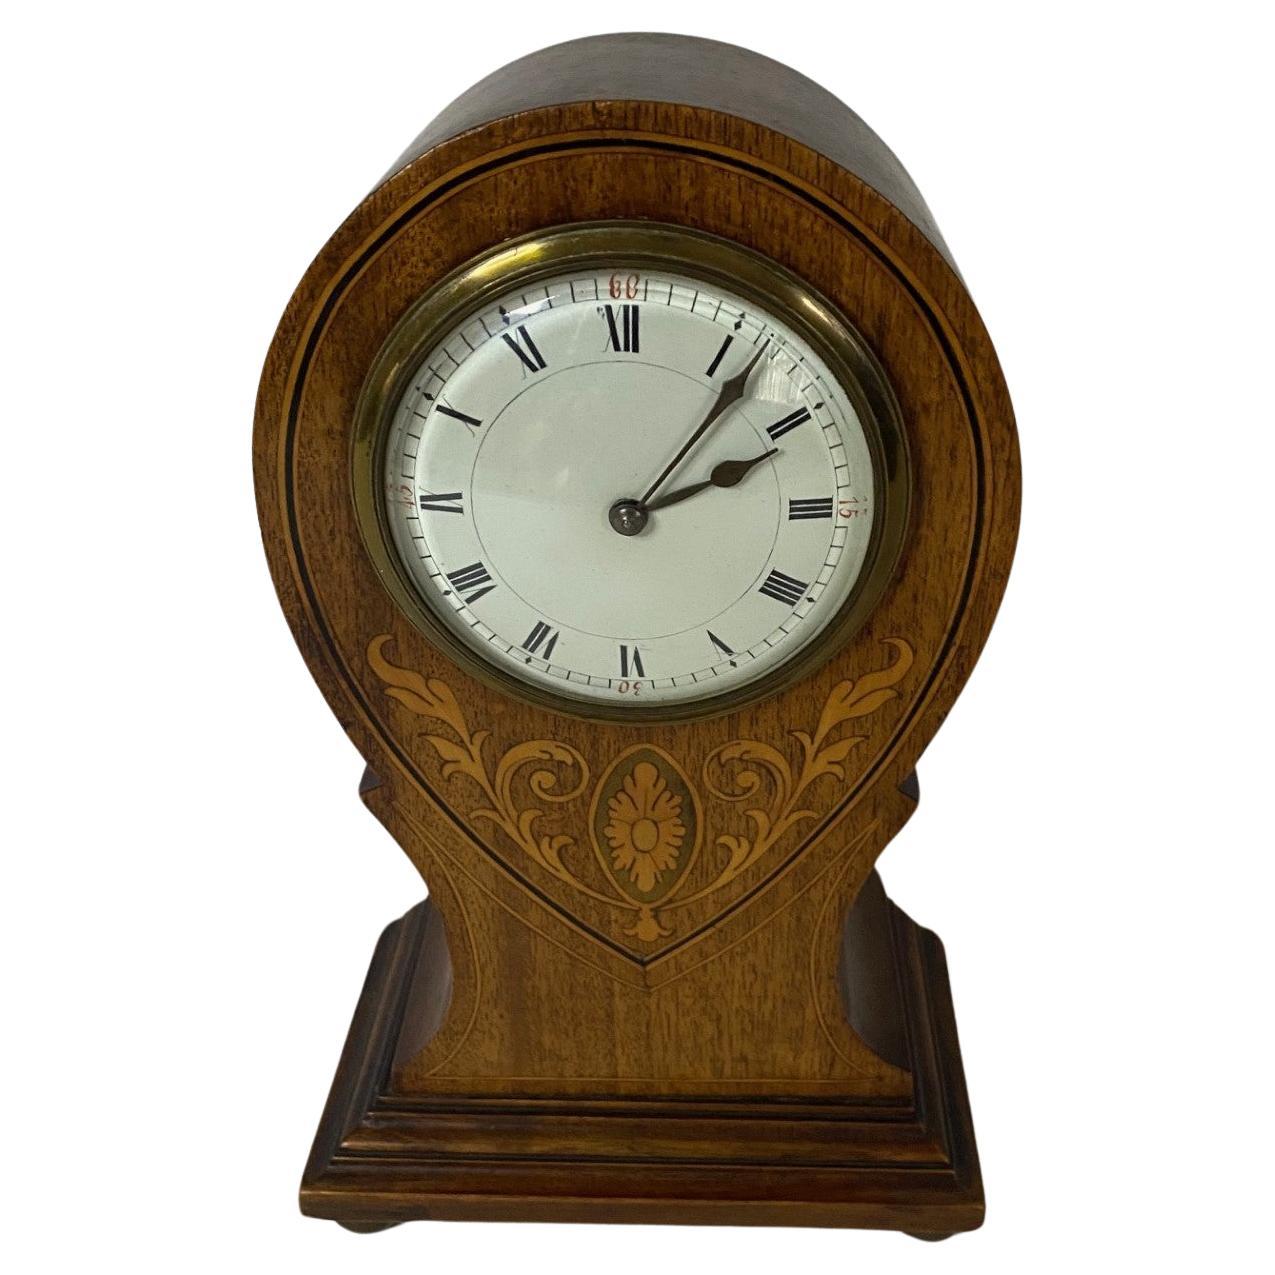 Début du 20e siècle, horloge de cheminée en acajou avec incrustation décorative, forme Angleterre